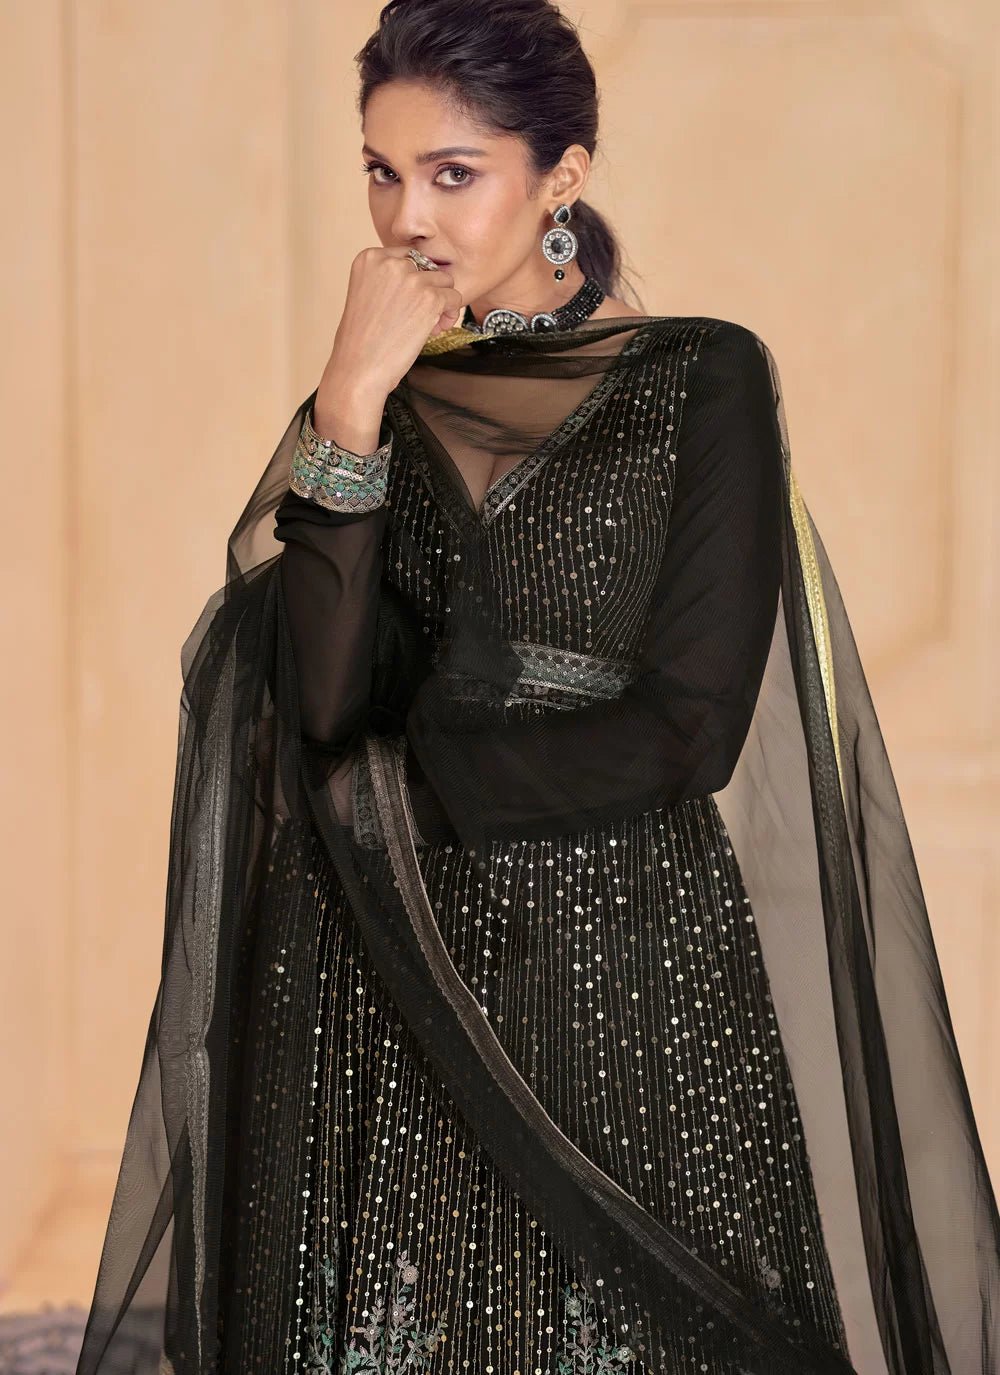 Ravishing Black Floral SAJ - Indian Dress House 786